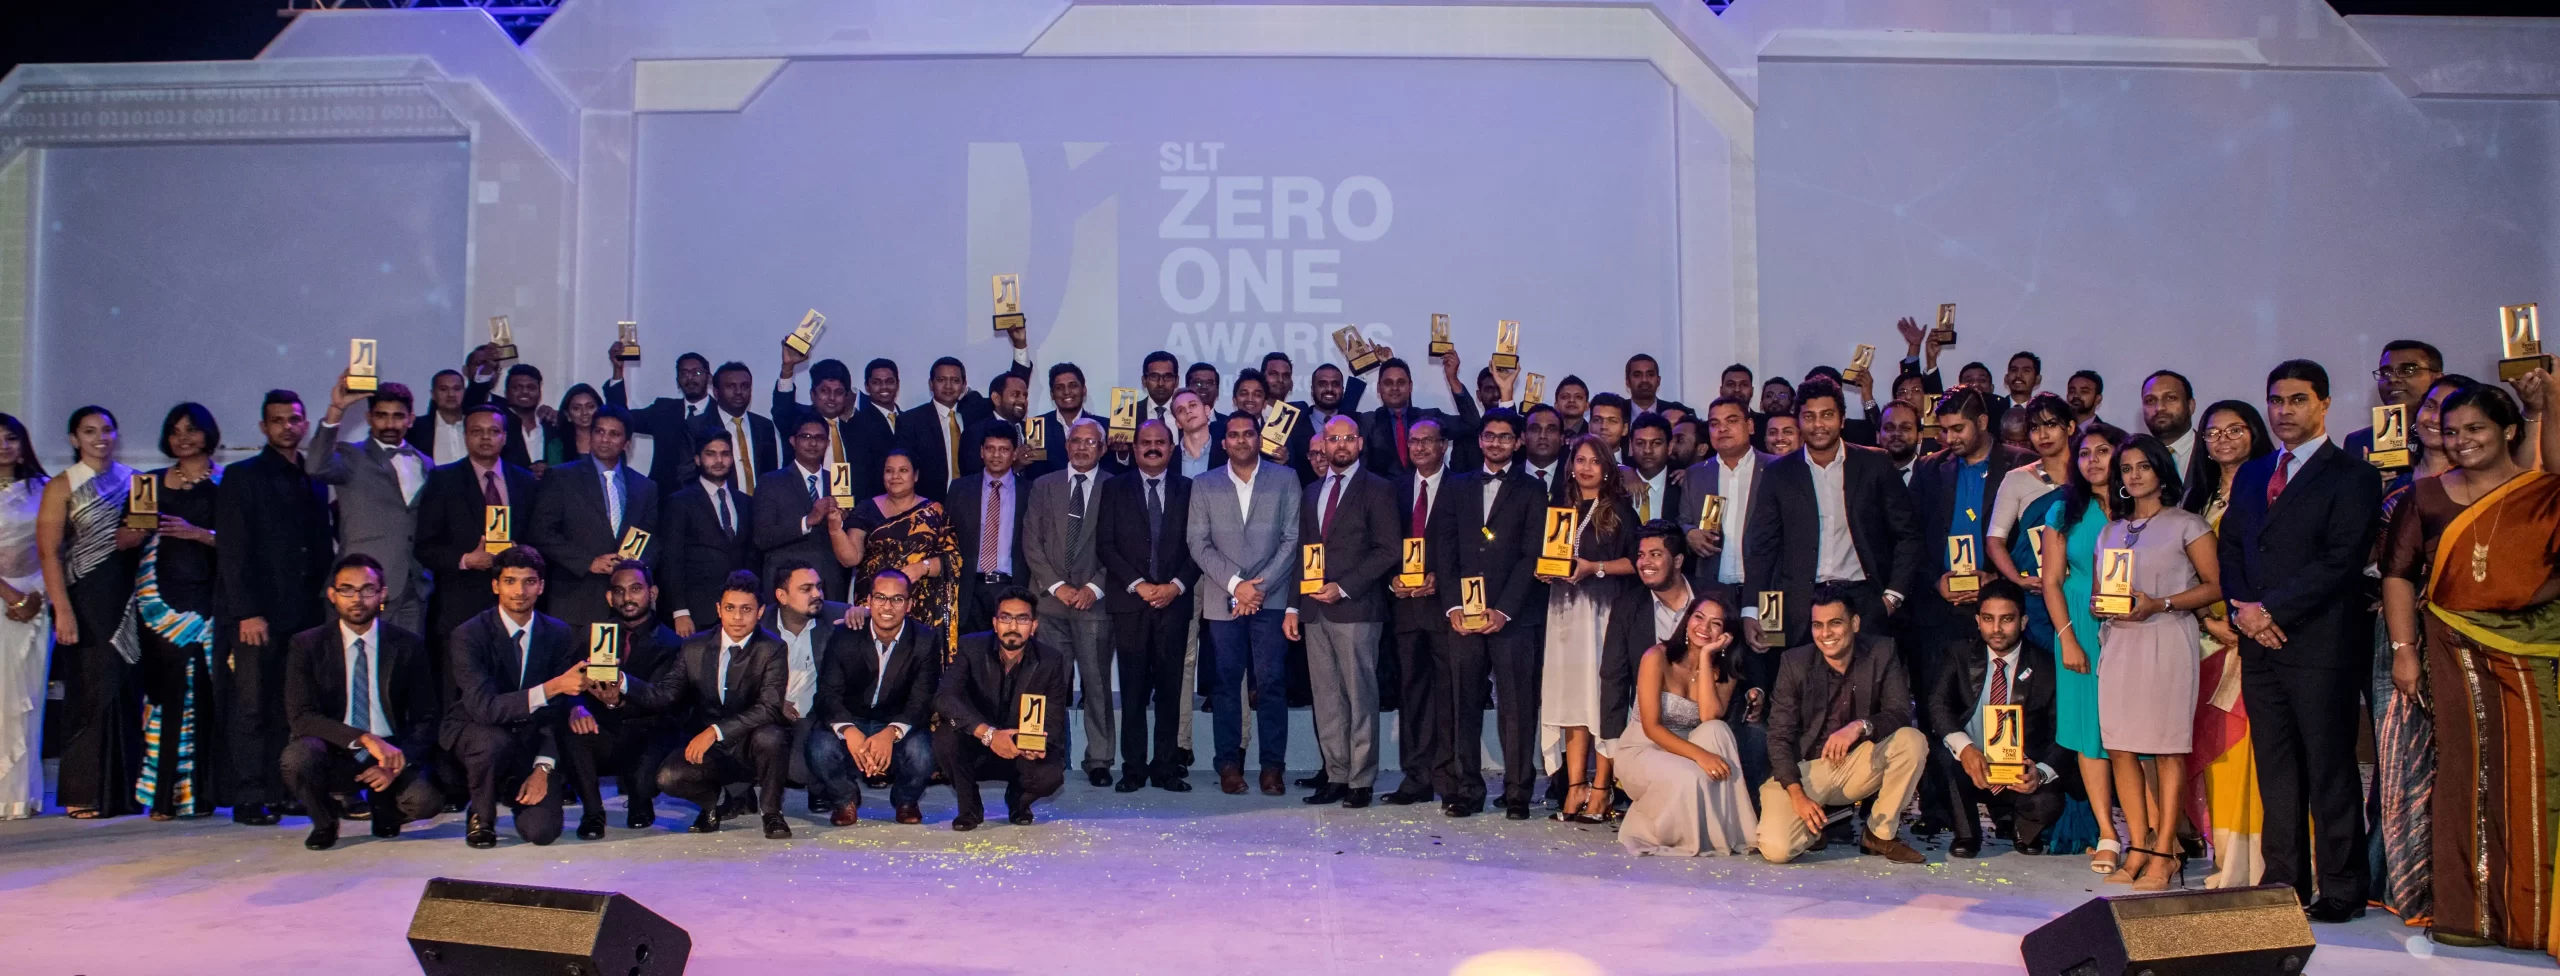 slt zero one awards scaled